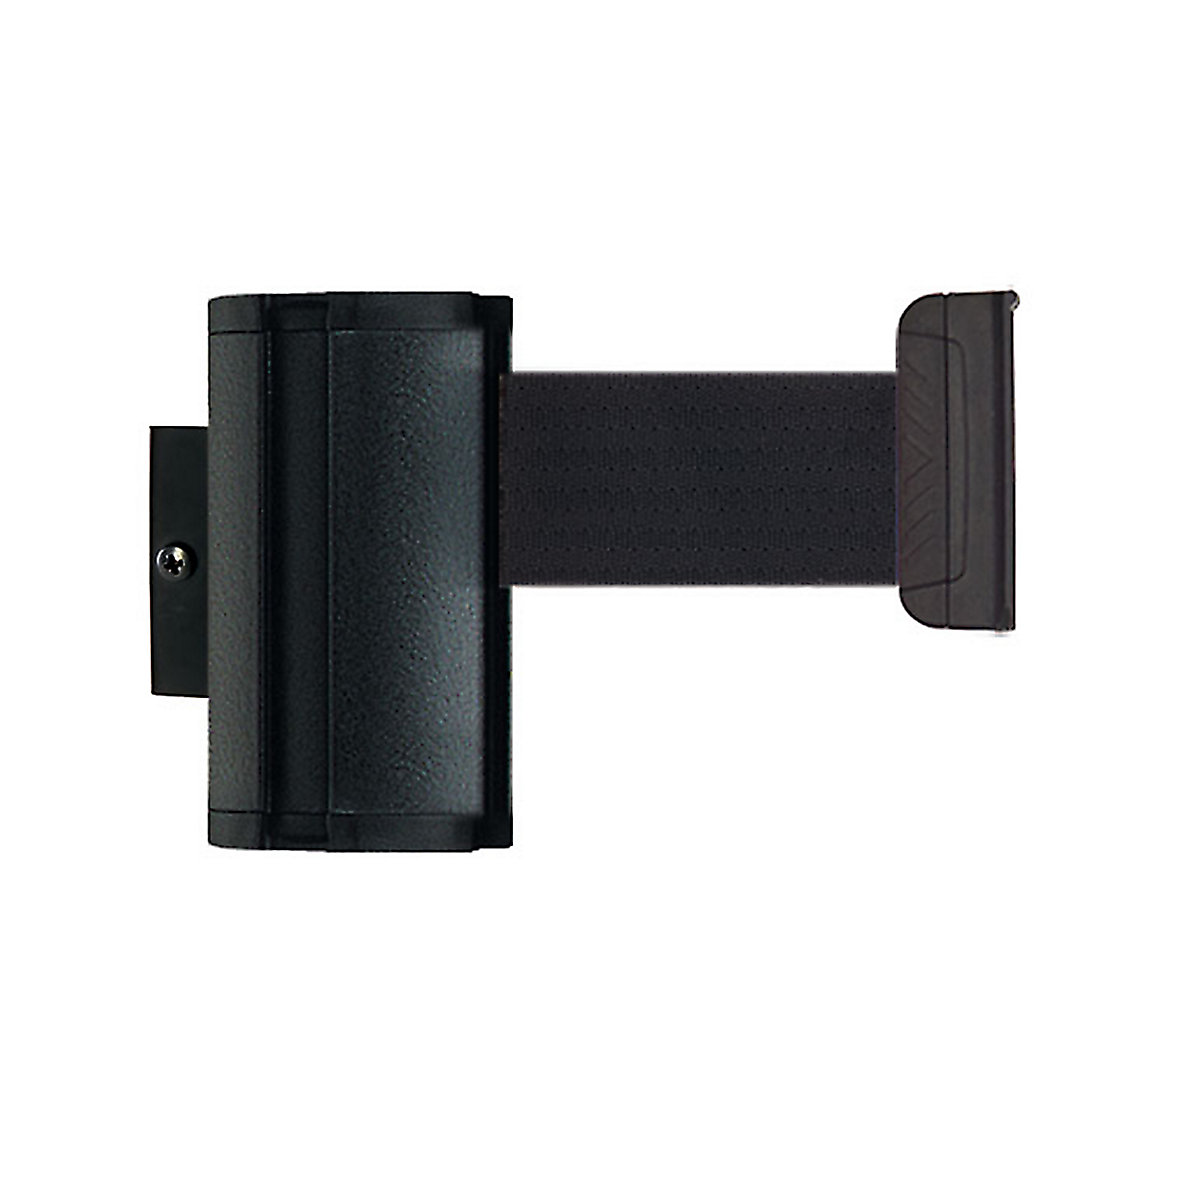 Cassete de cinta Wall Mount, extração máx. da cinta 3700 mm, cor da cinta preto-6